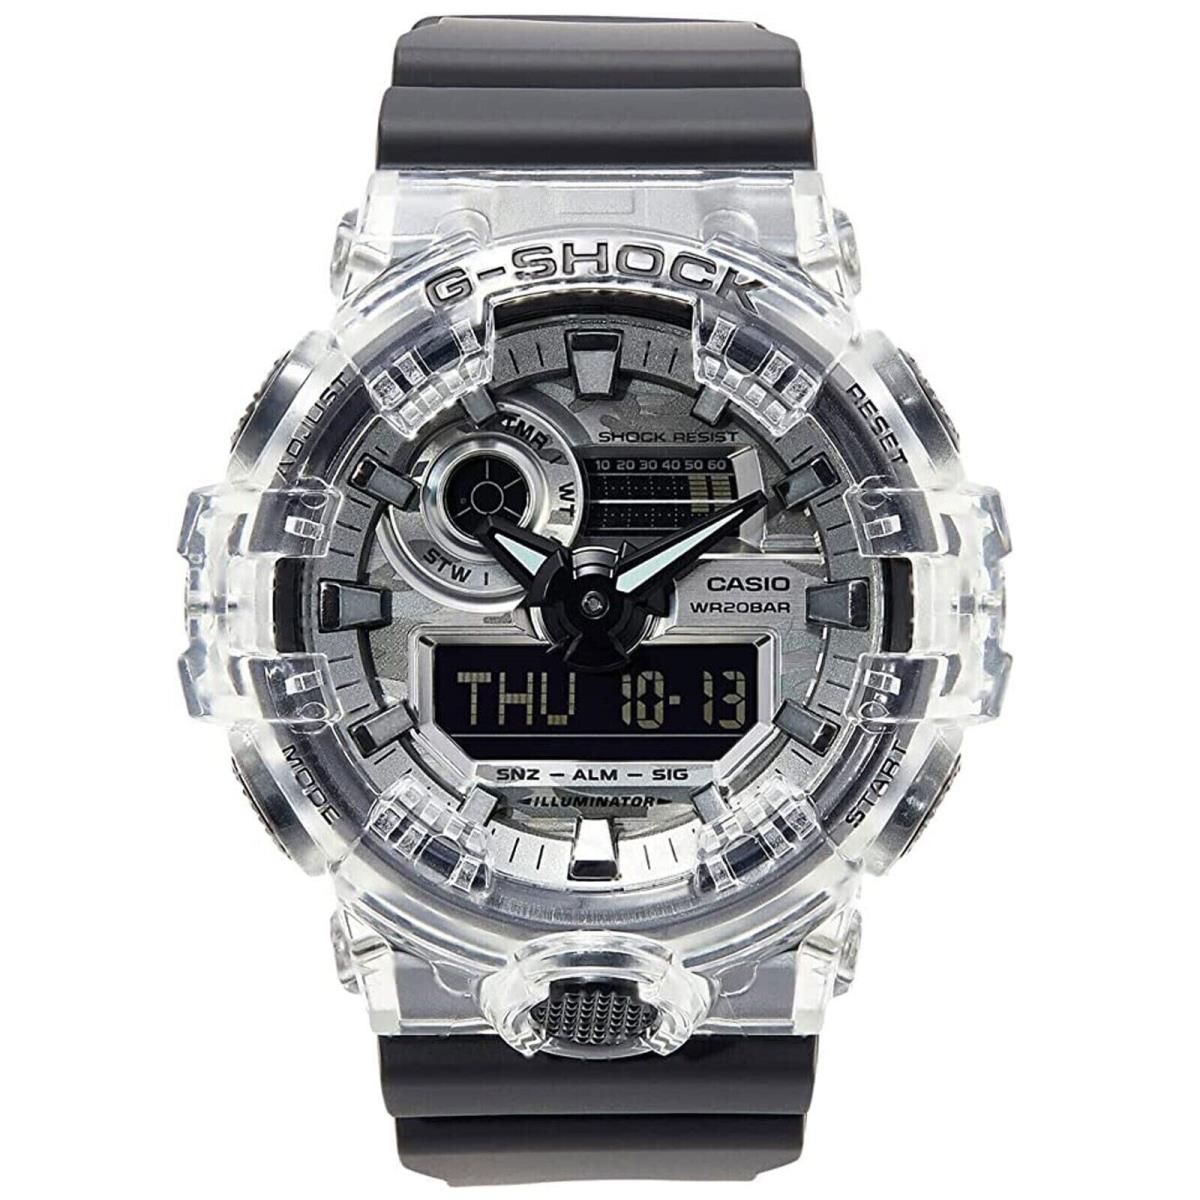 Casio G-shock GA700SKC Analog Digital Resin Clear/black Watch GA700SKC-1A